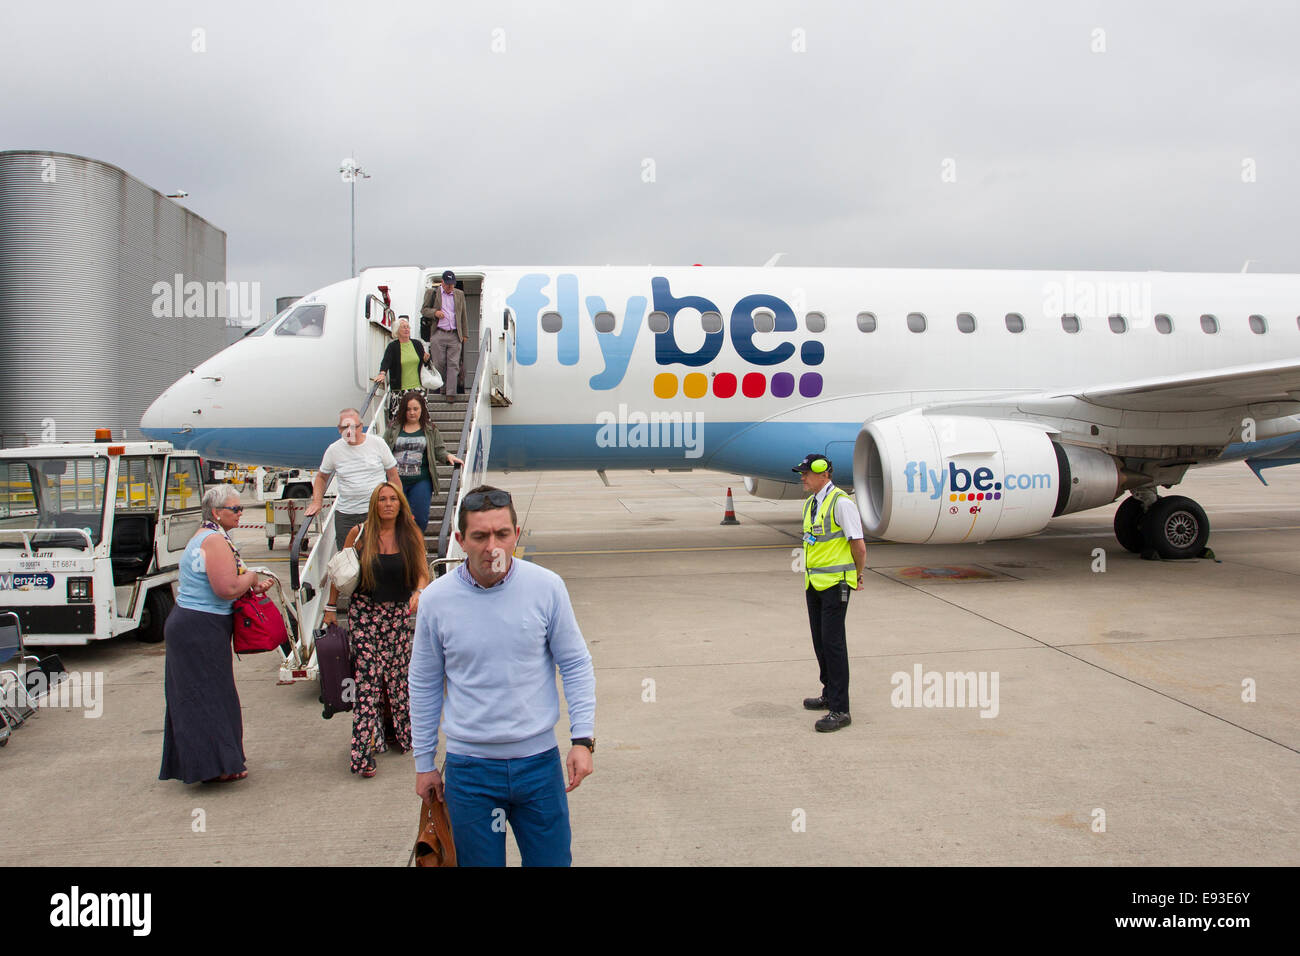 Flybe llegadas - llegando al aeropuerto de Manchester Foto de stock